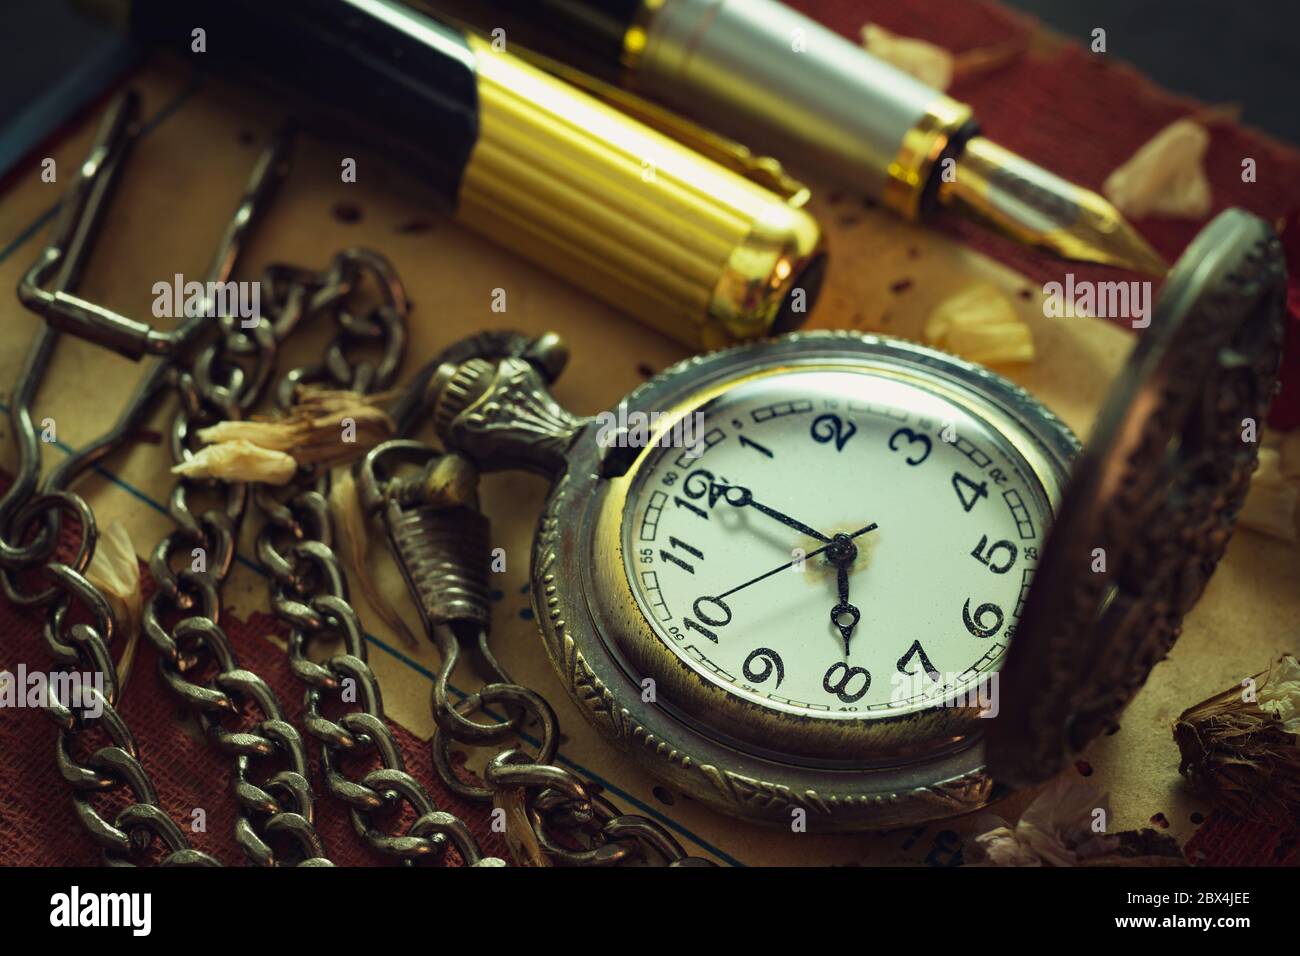 Orologio da tasca vintage e penna di ottone sul vecchio libro. Alle 8 del mattino. Concetto di istruzione e stile vintage. Foto Stock